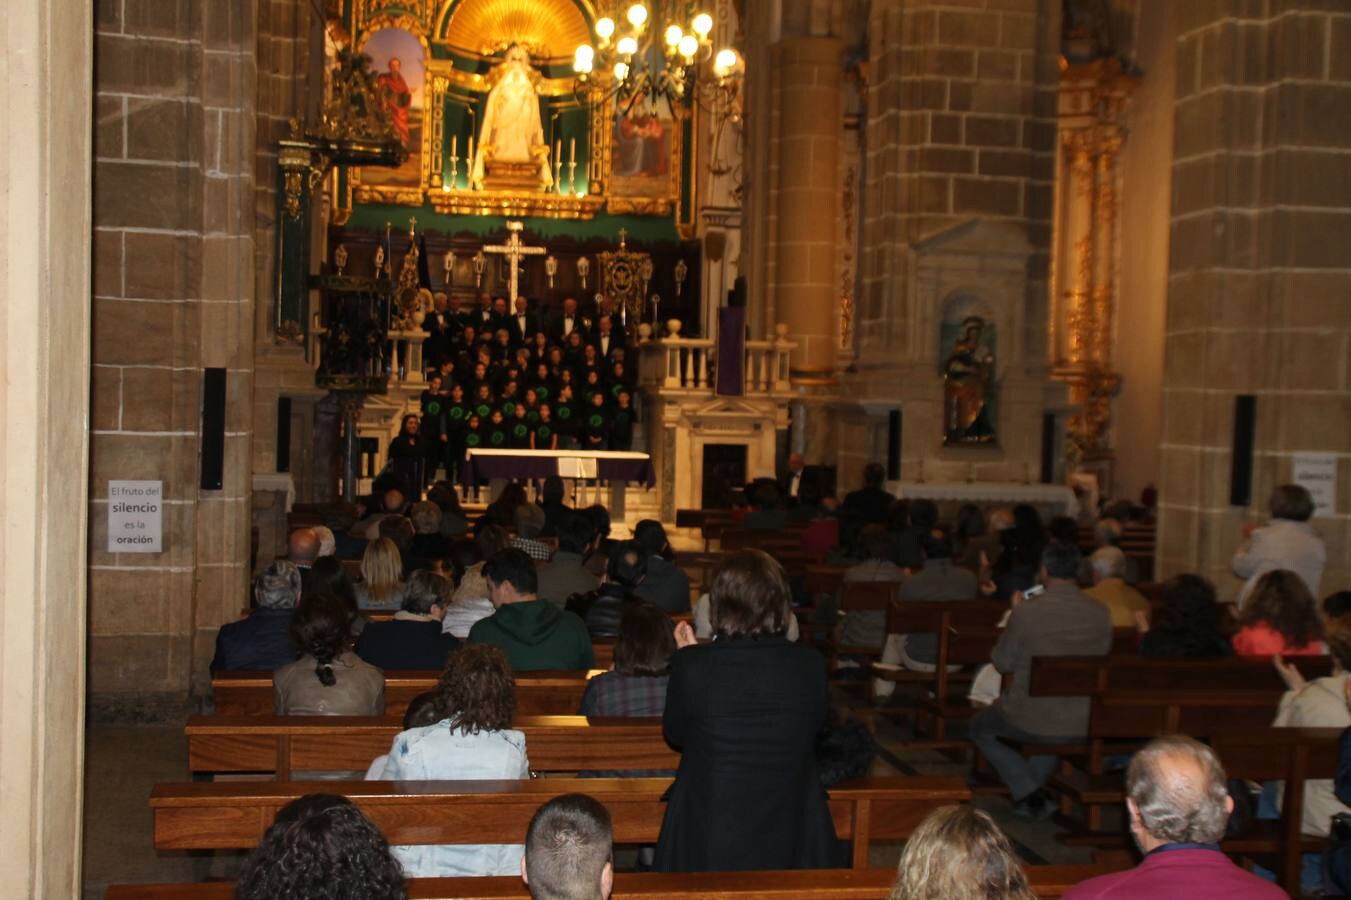 La música y el canto coral sacro llenan de un ambiente especial el templo de Santa María